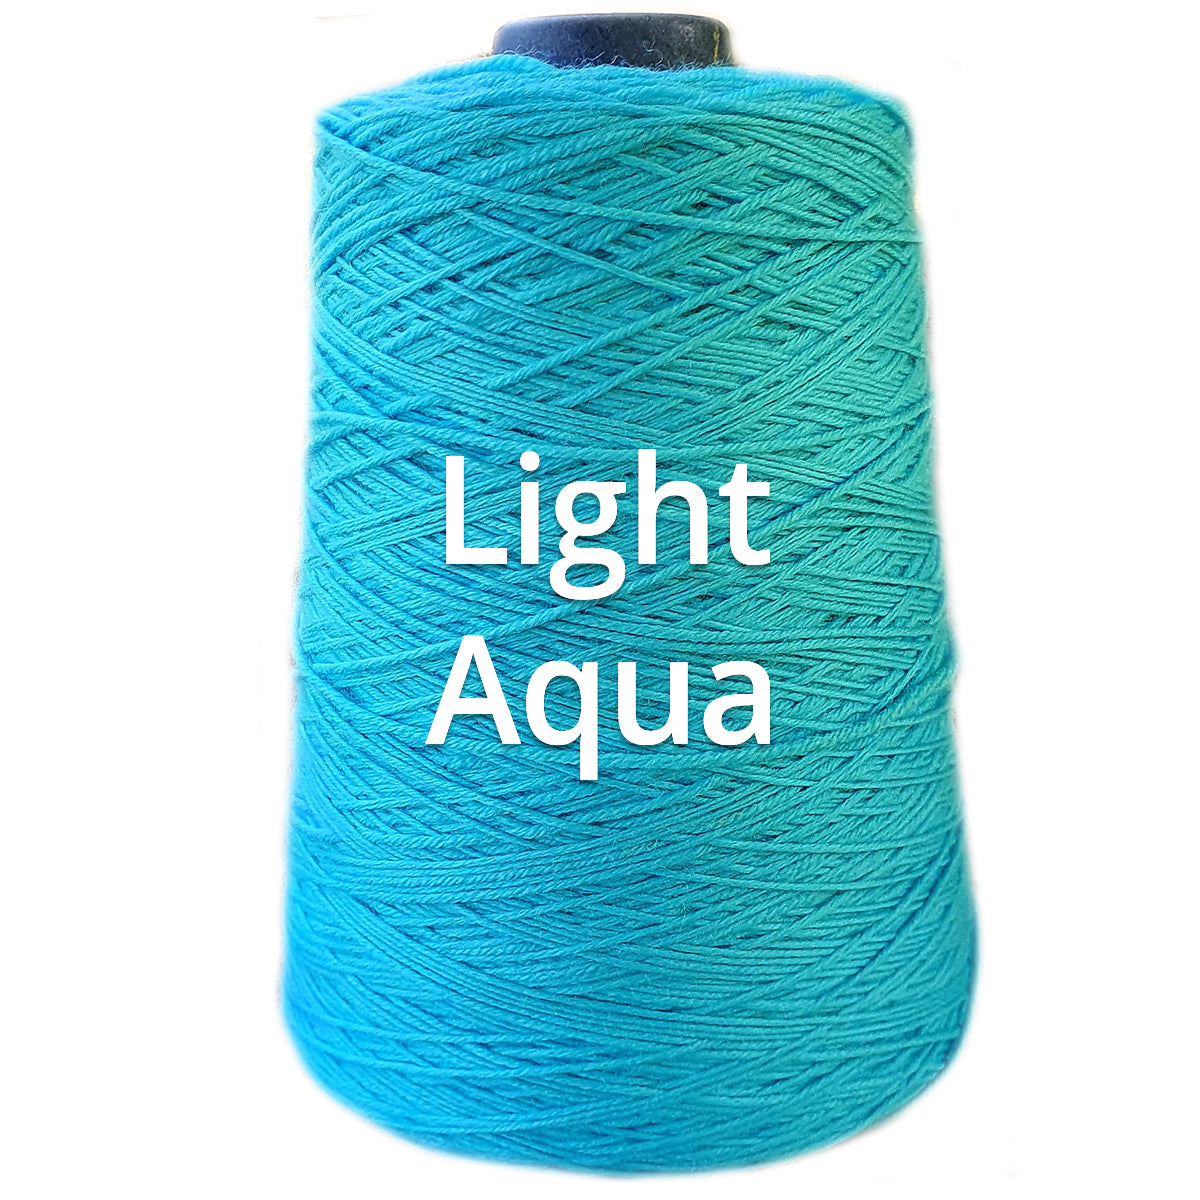 Light Aqua - Nundle Collection 4 ply Chaffey Yarn 400g Cone